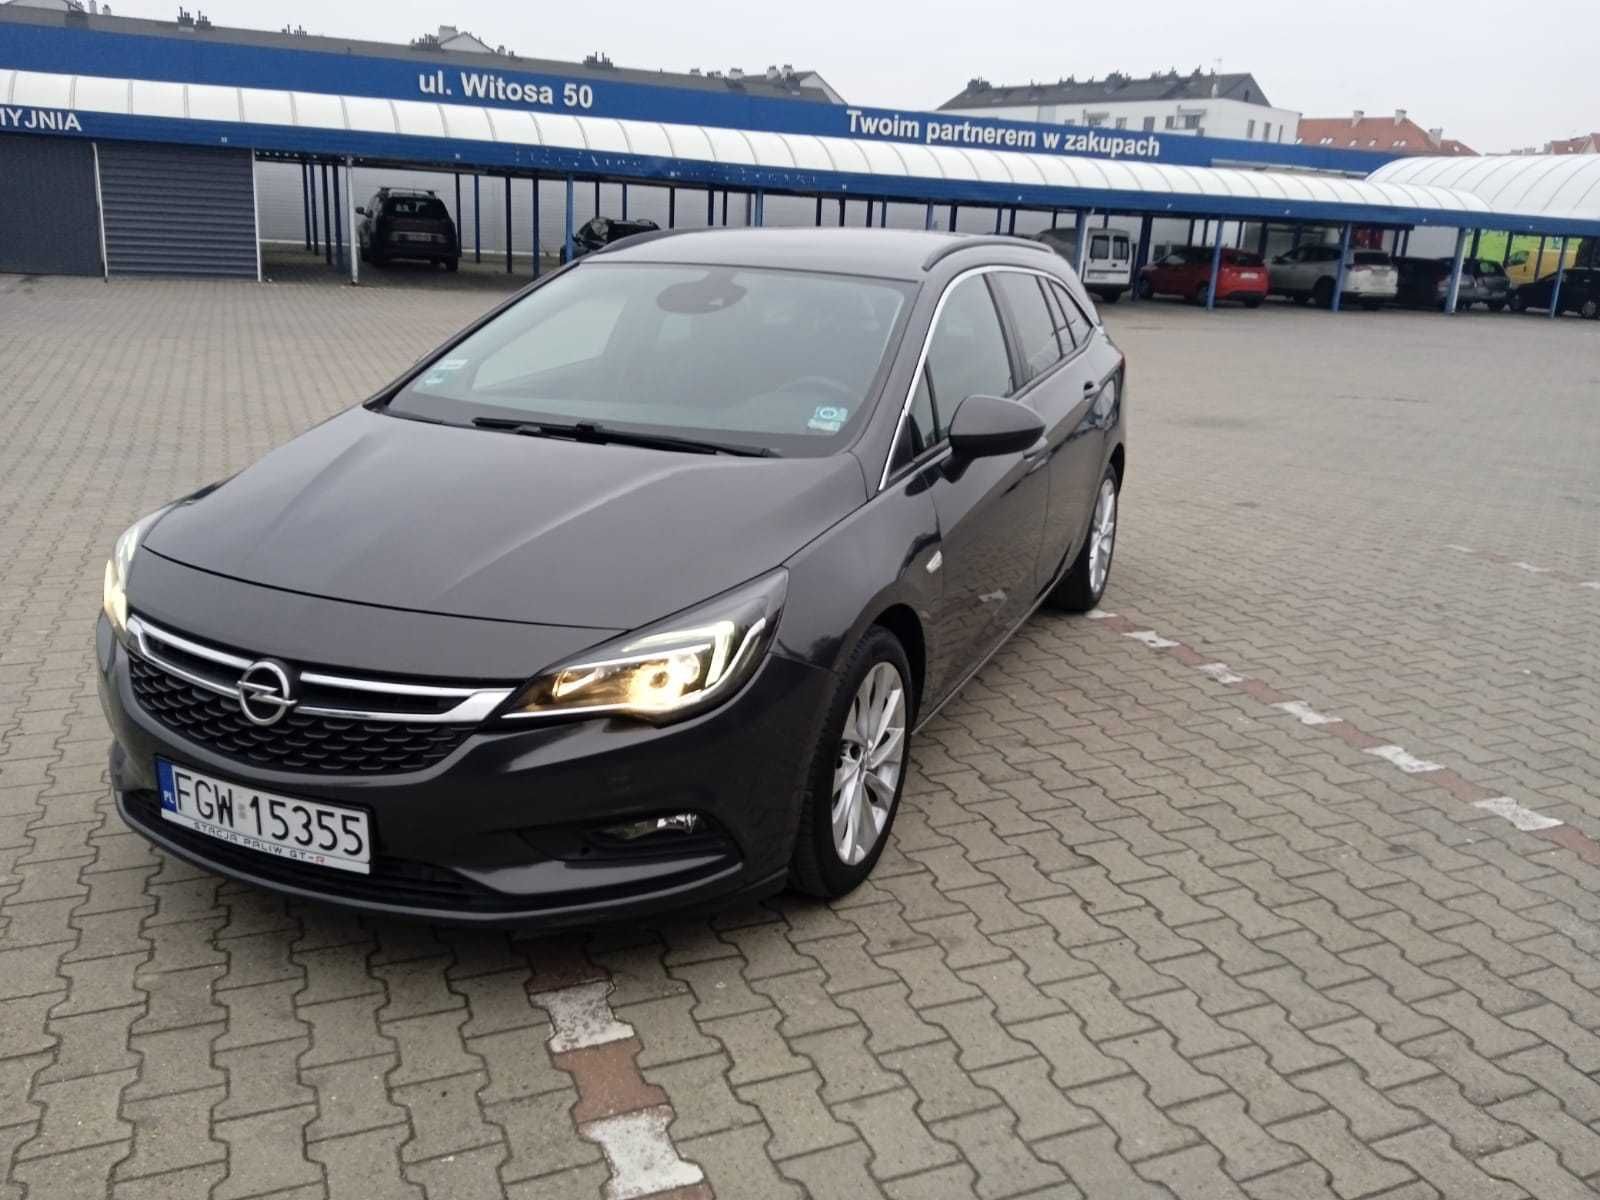 Opel Astra CDTi 160 KM Biturbo 2016r